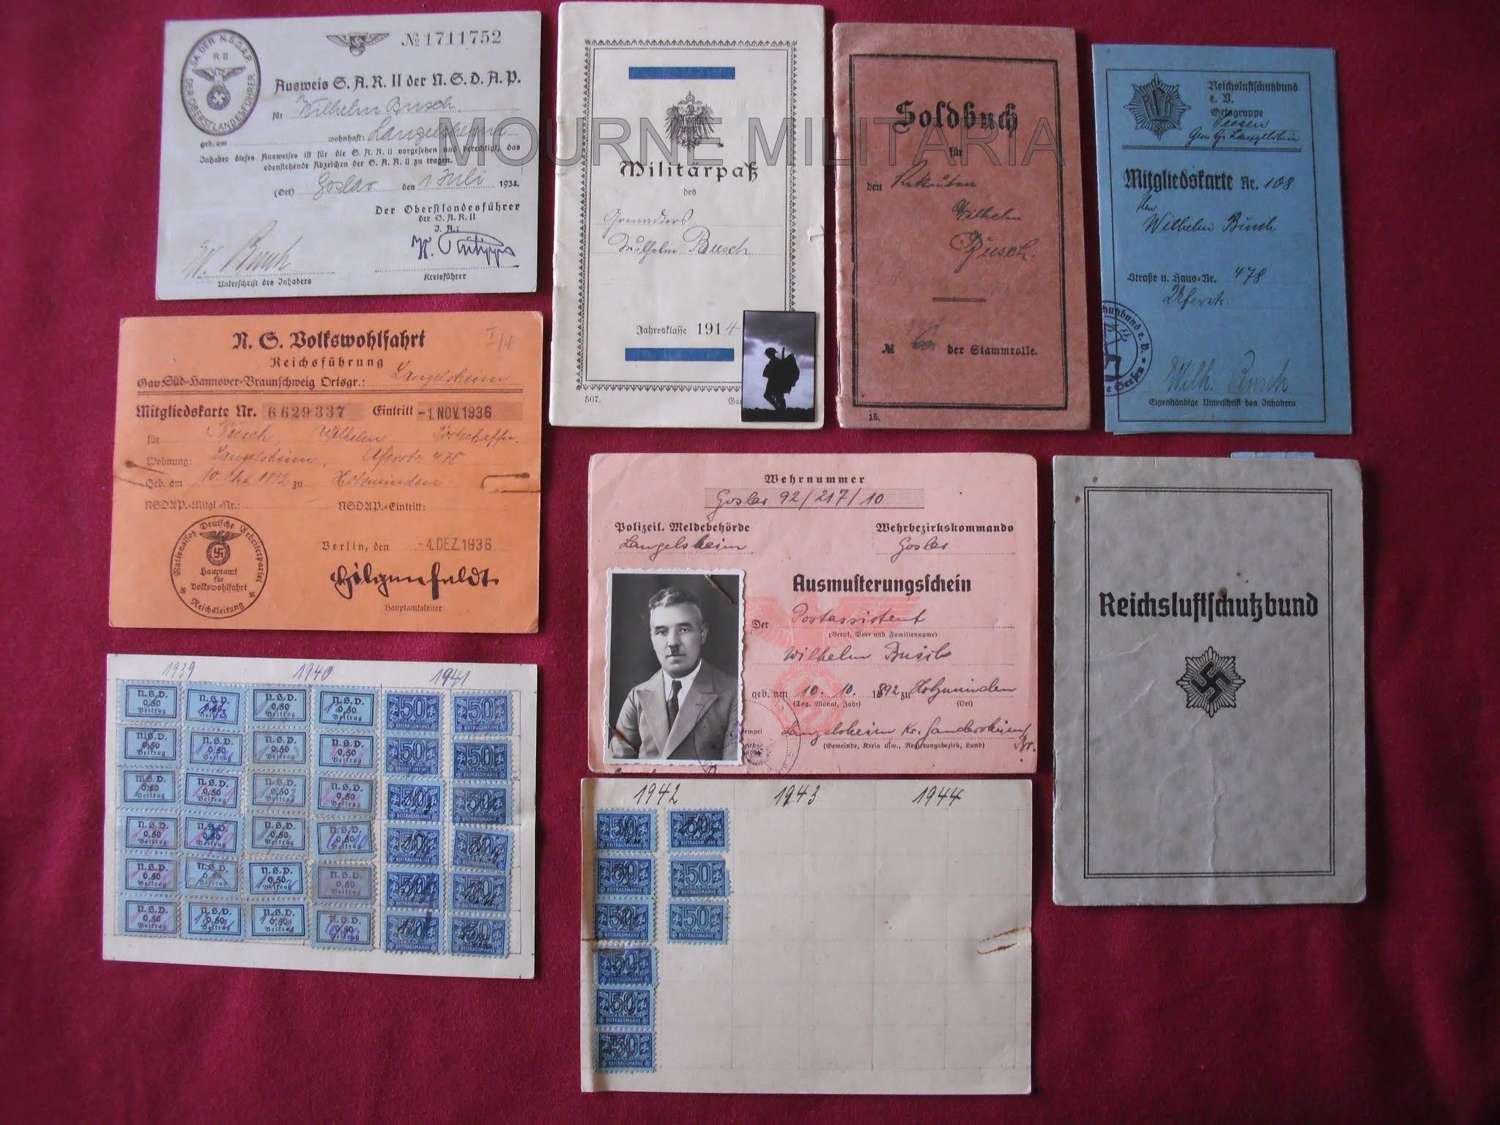 Document Grouping to Herr Wilhelm Busch